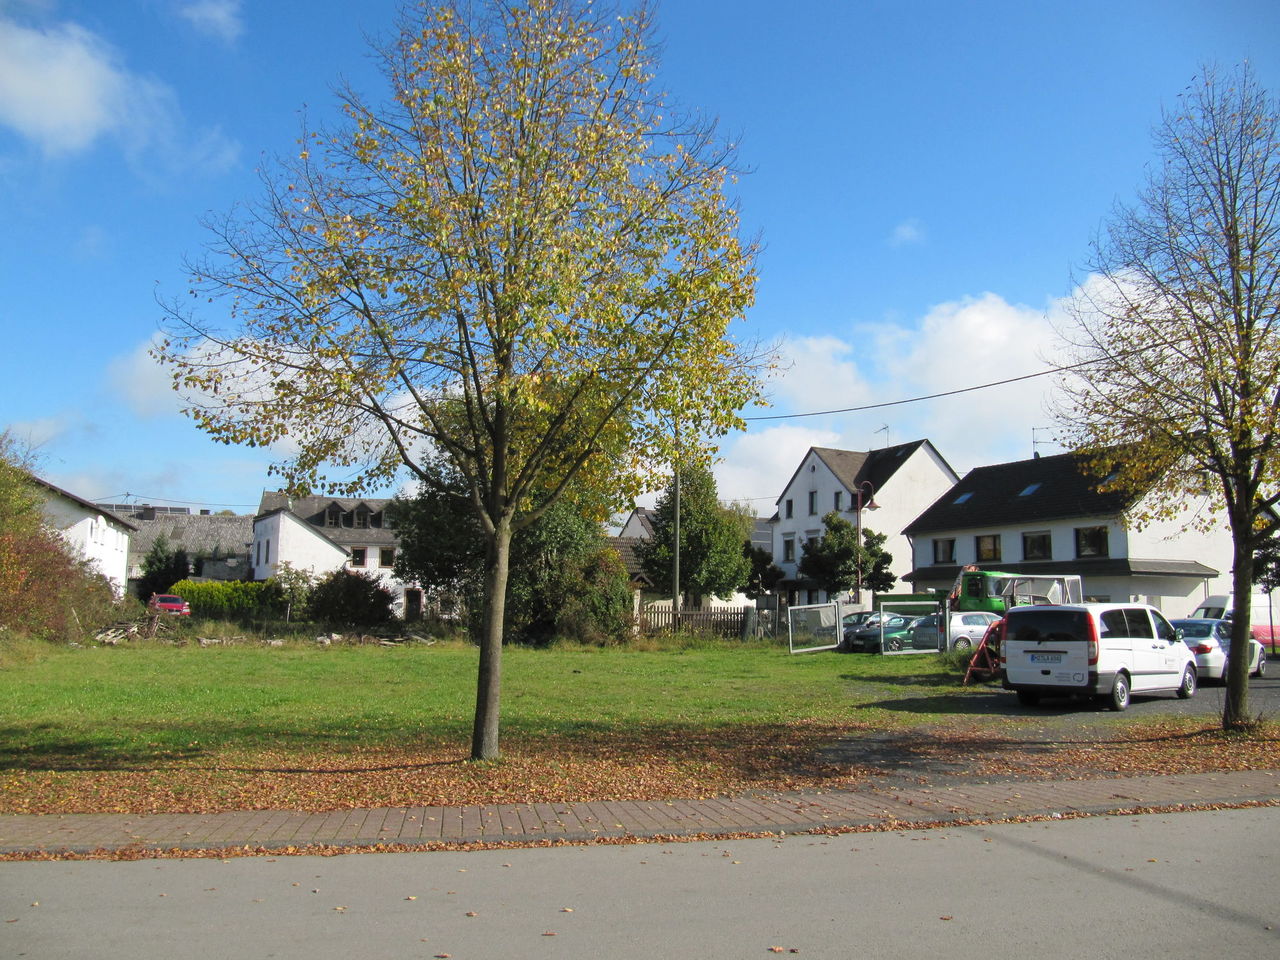 Grünfläche inmitten eines Wohngebiets, im Vordergrund ein Baum und seitlich Fahrzeuge und neuere Einfamilienhäuser mit Giebeln.